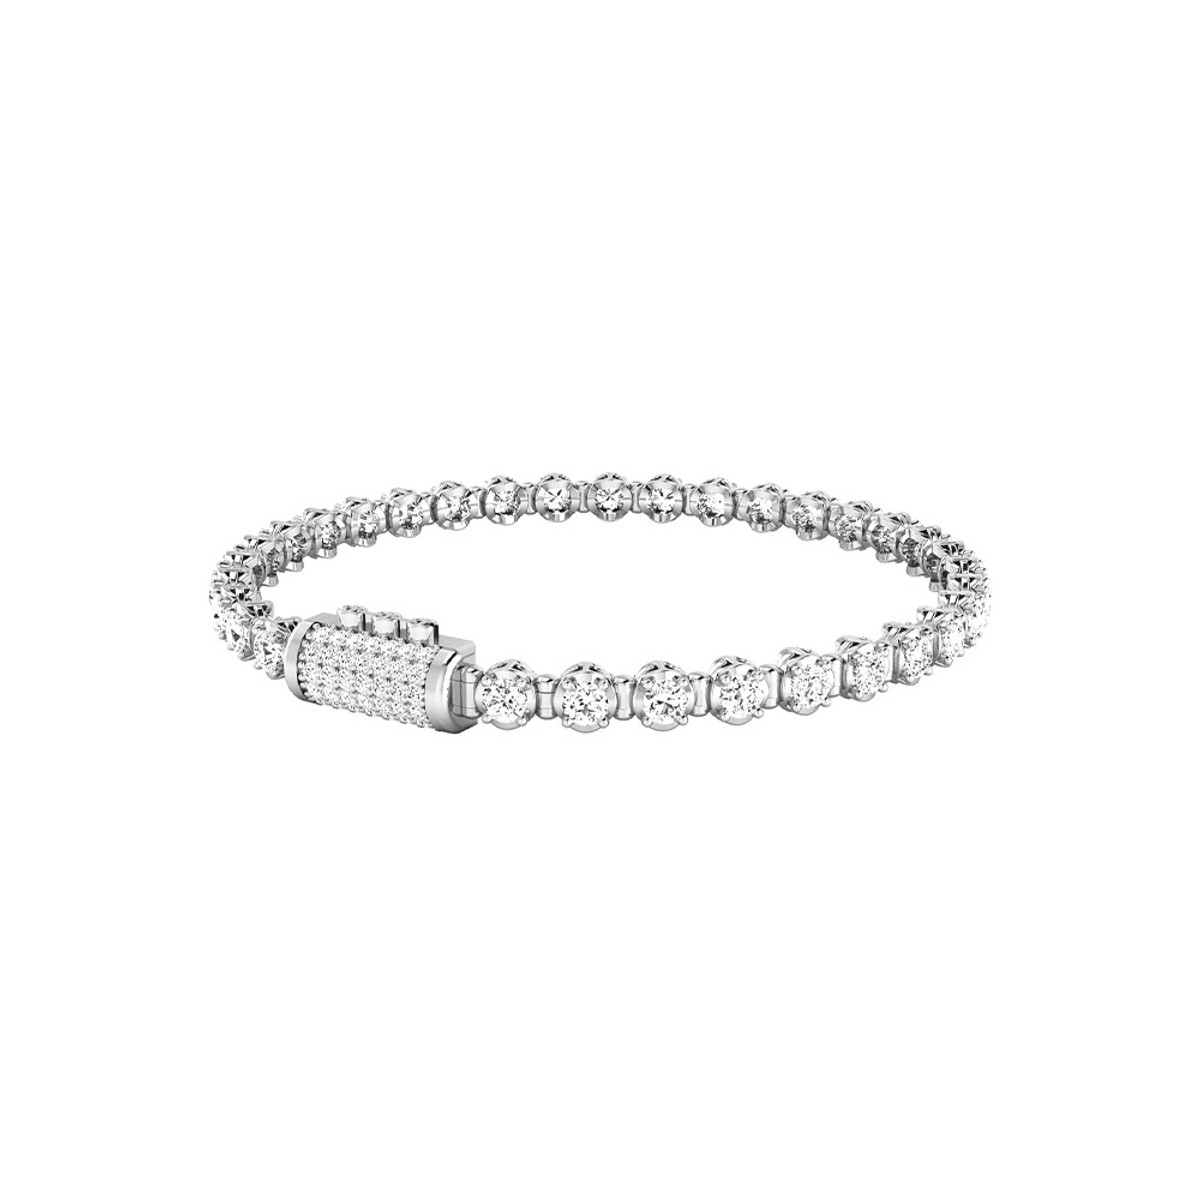 Hoorsenbuhs 18K White Gold Infinite 3MM Diamond Bracelet-57469 Product Image